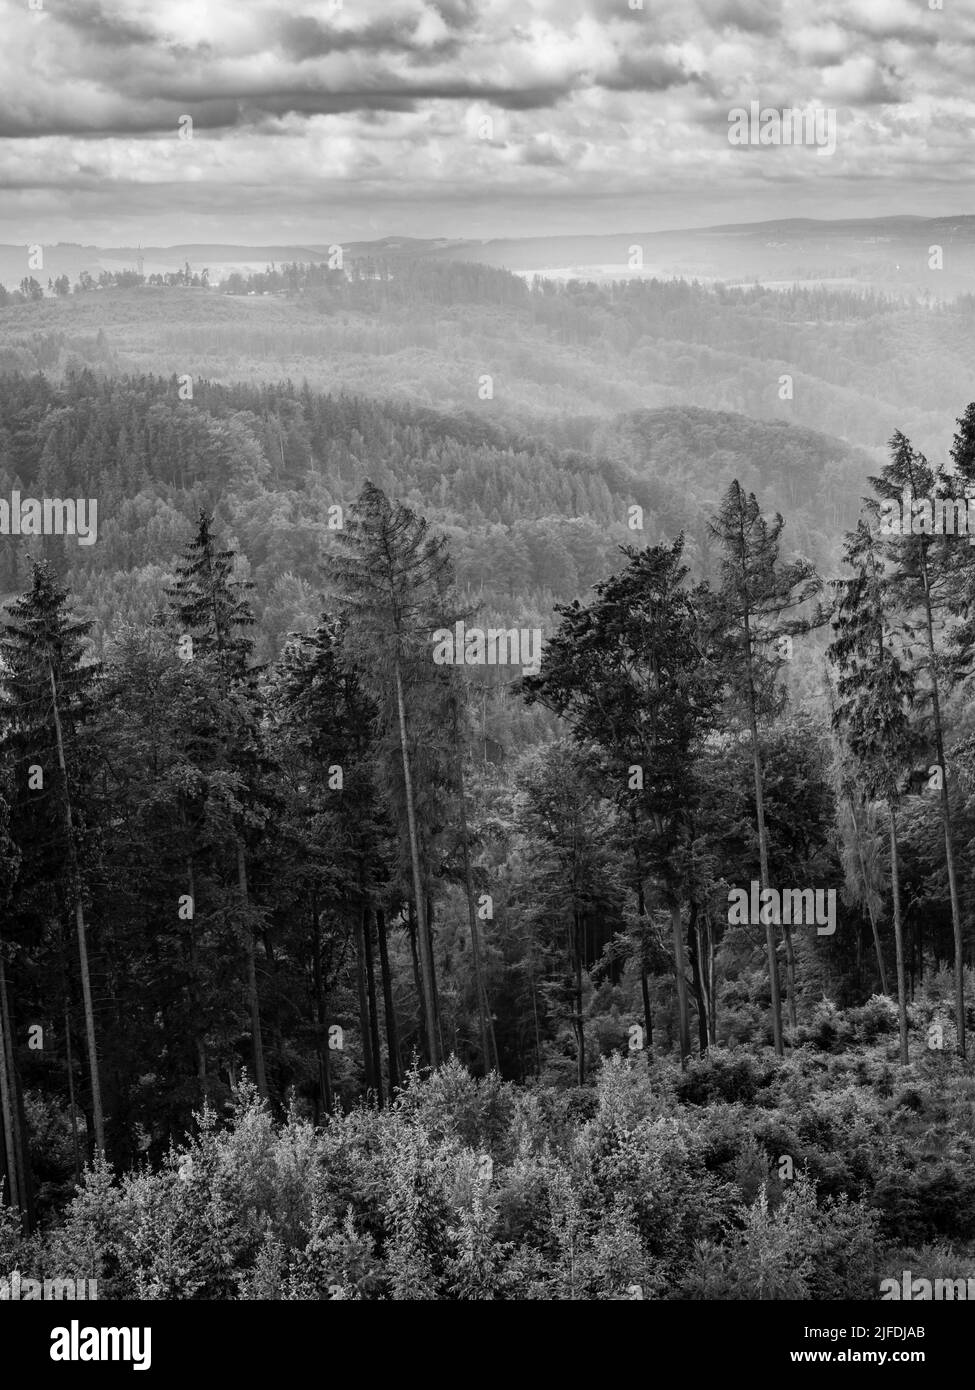 Waldlandschaft mit Regen- und Kiefernbäumen in der Nähe von Karlovy Vary, Böhmen, Tschechien, in Schwarz-Weiß-Schwarz bei einem niederländischen Winkel Stockfoto